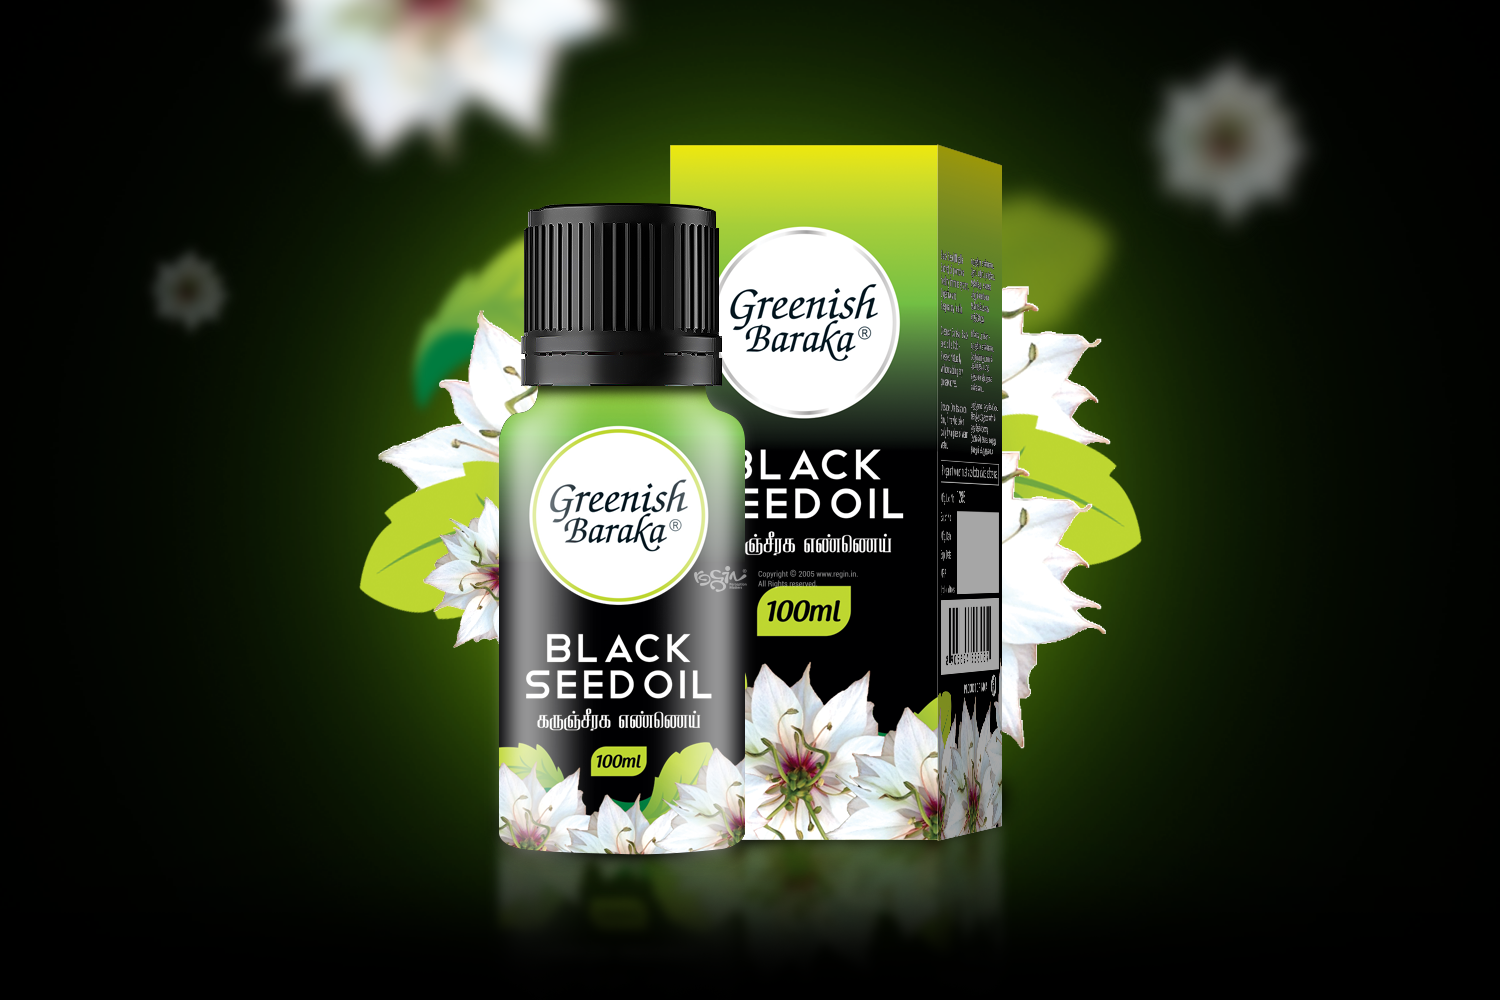 Greenish Baraka Black seed oil